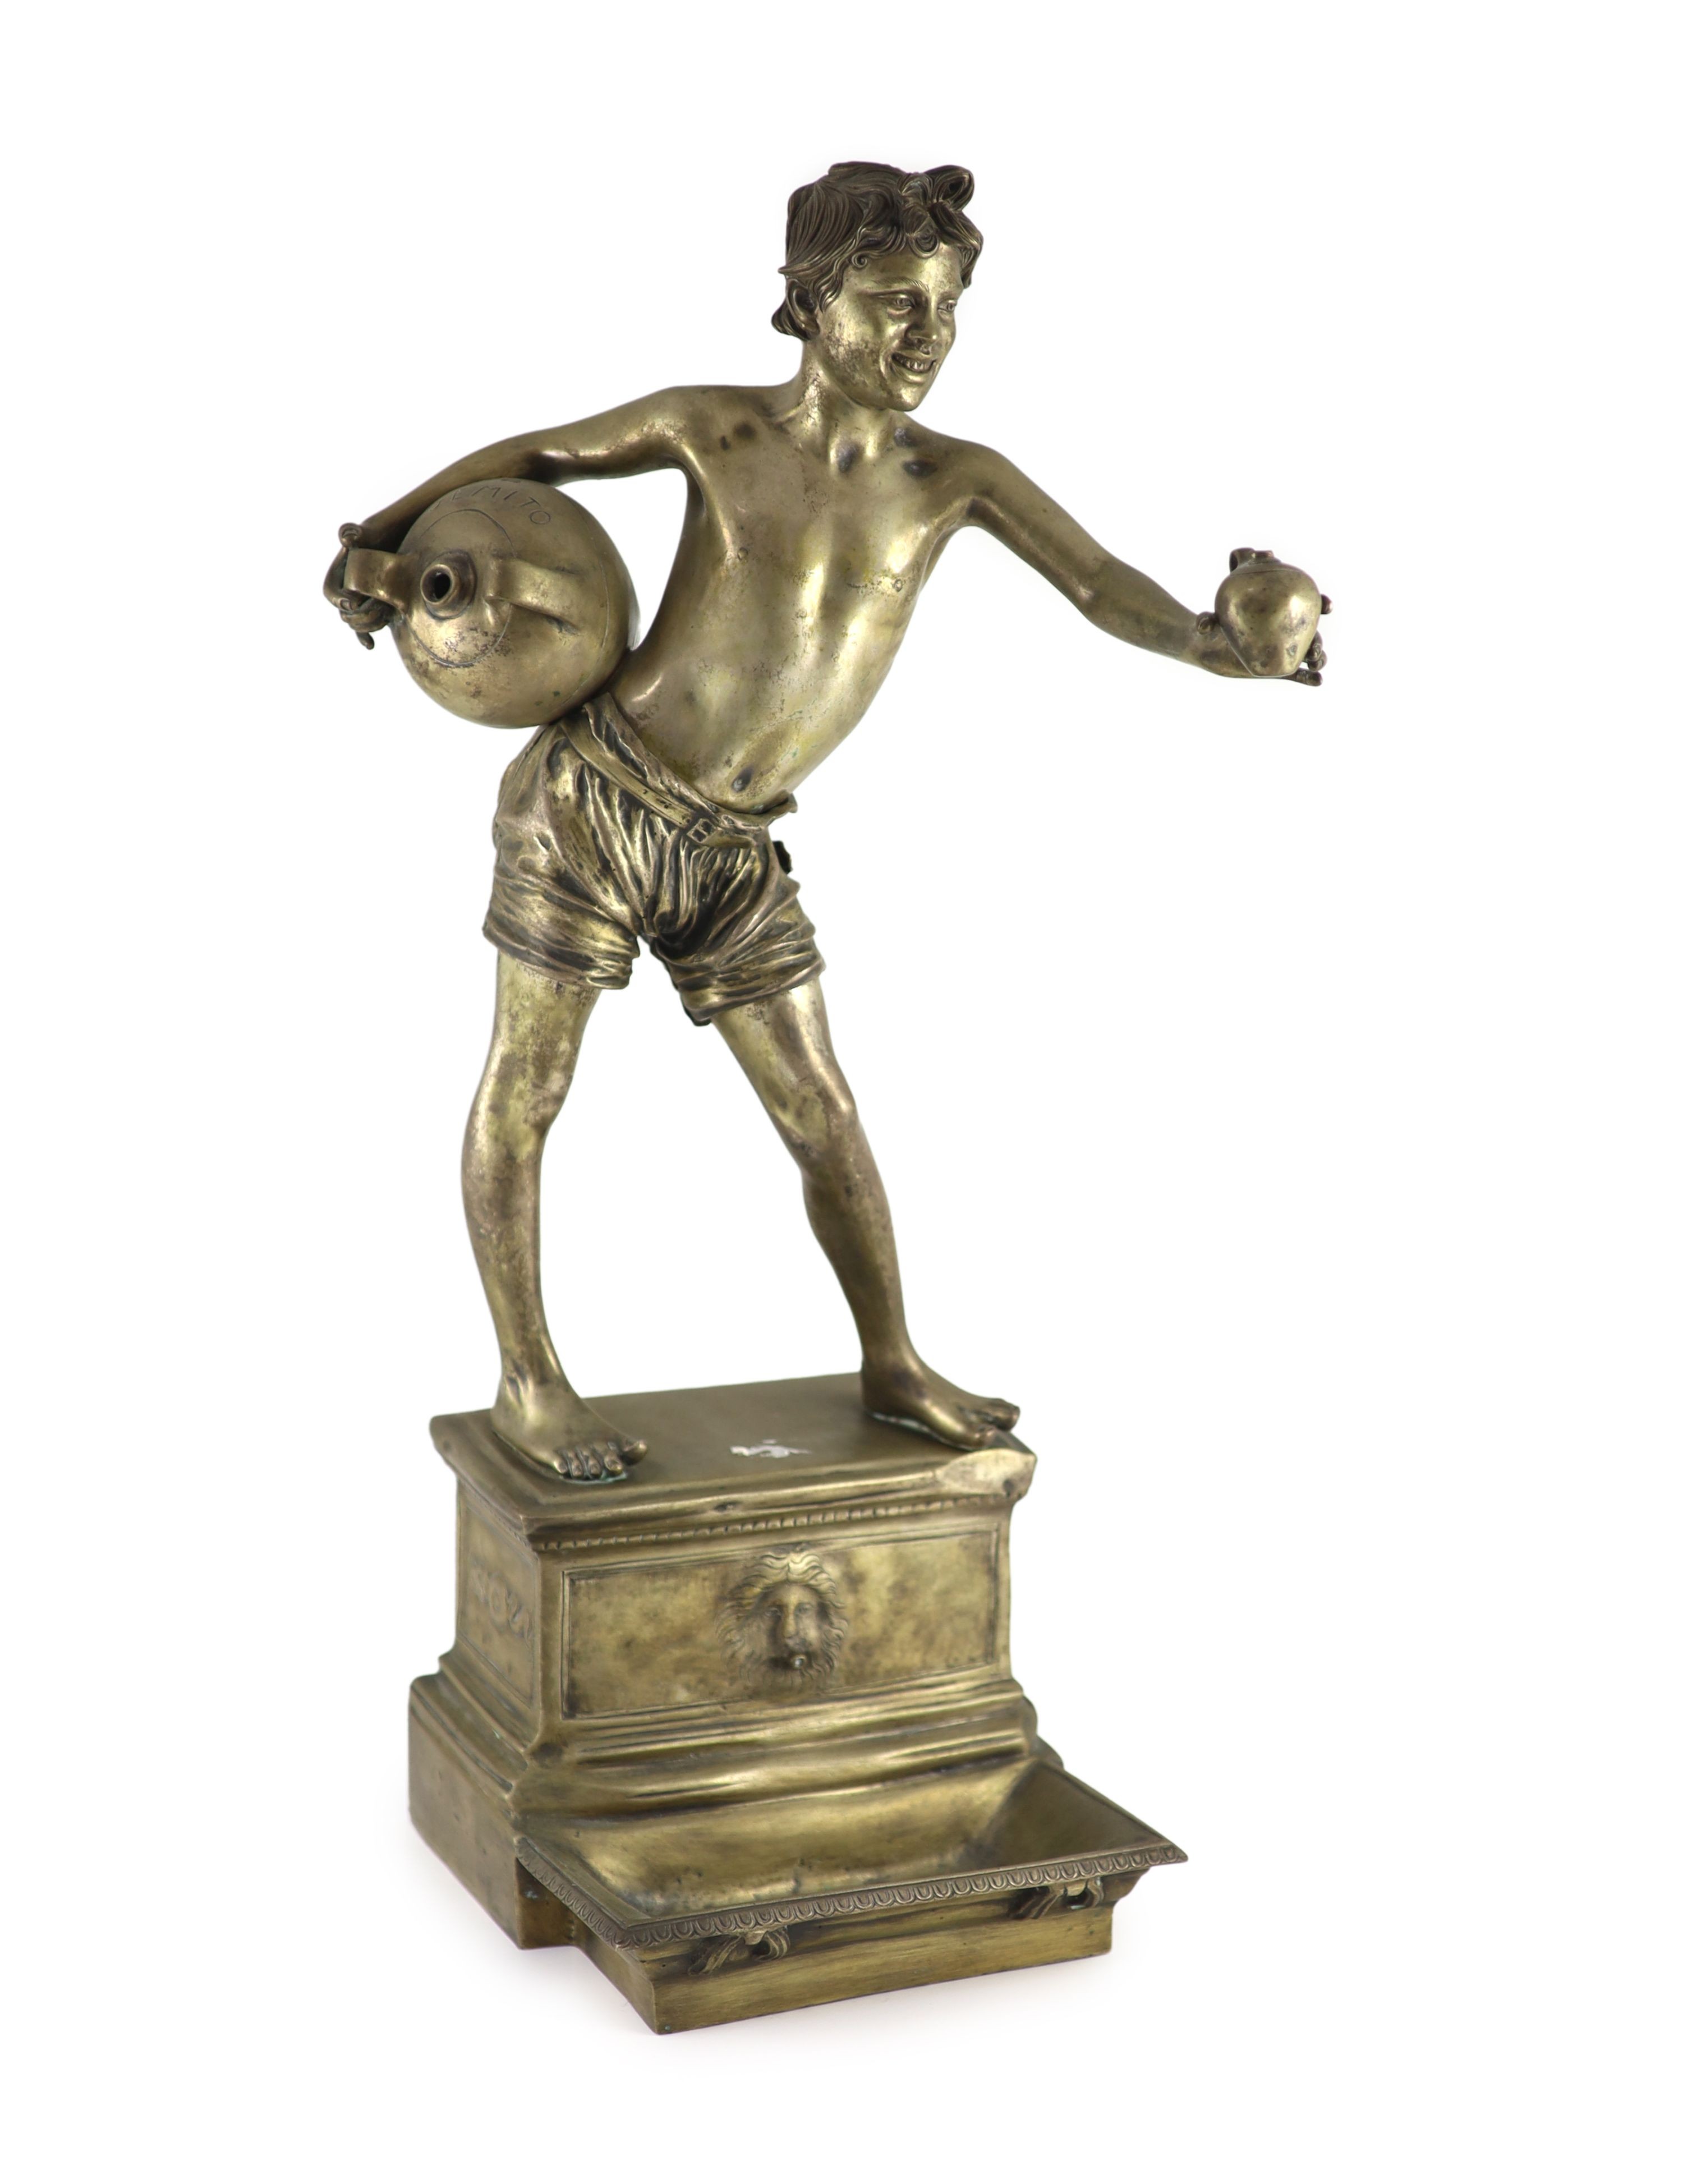 Vincenzo Gemito (Italian 1852-1929): 'L'Acquaiolo' (The Water Carrier), a bronze figural